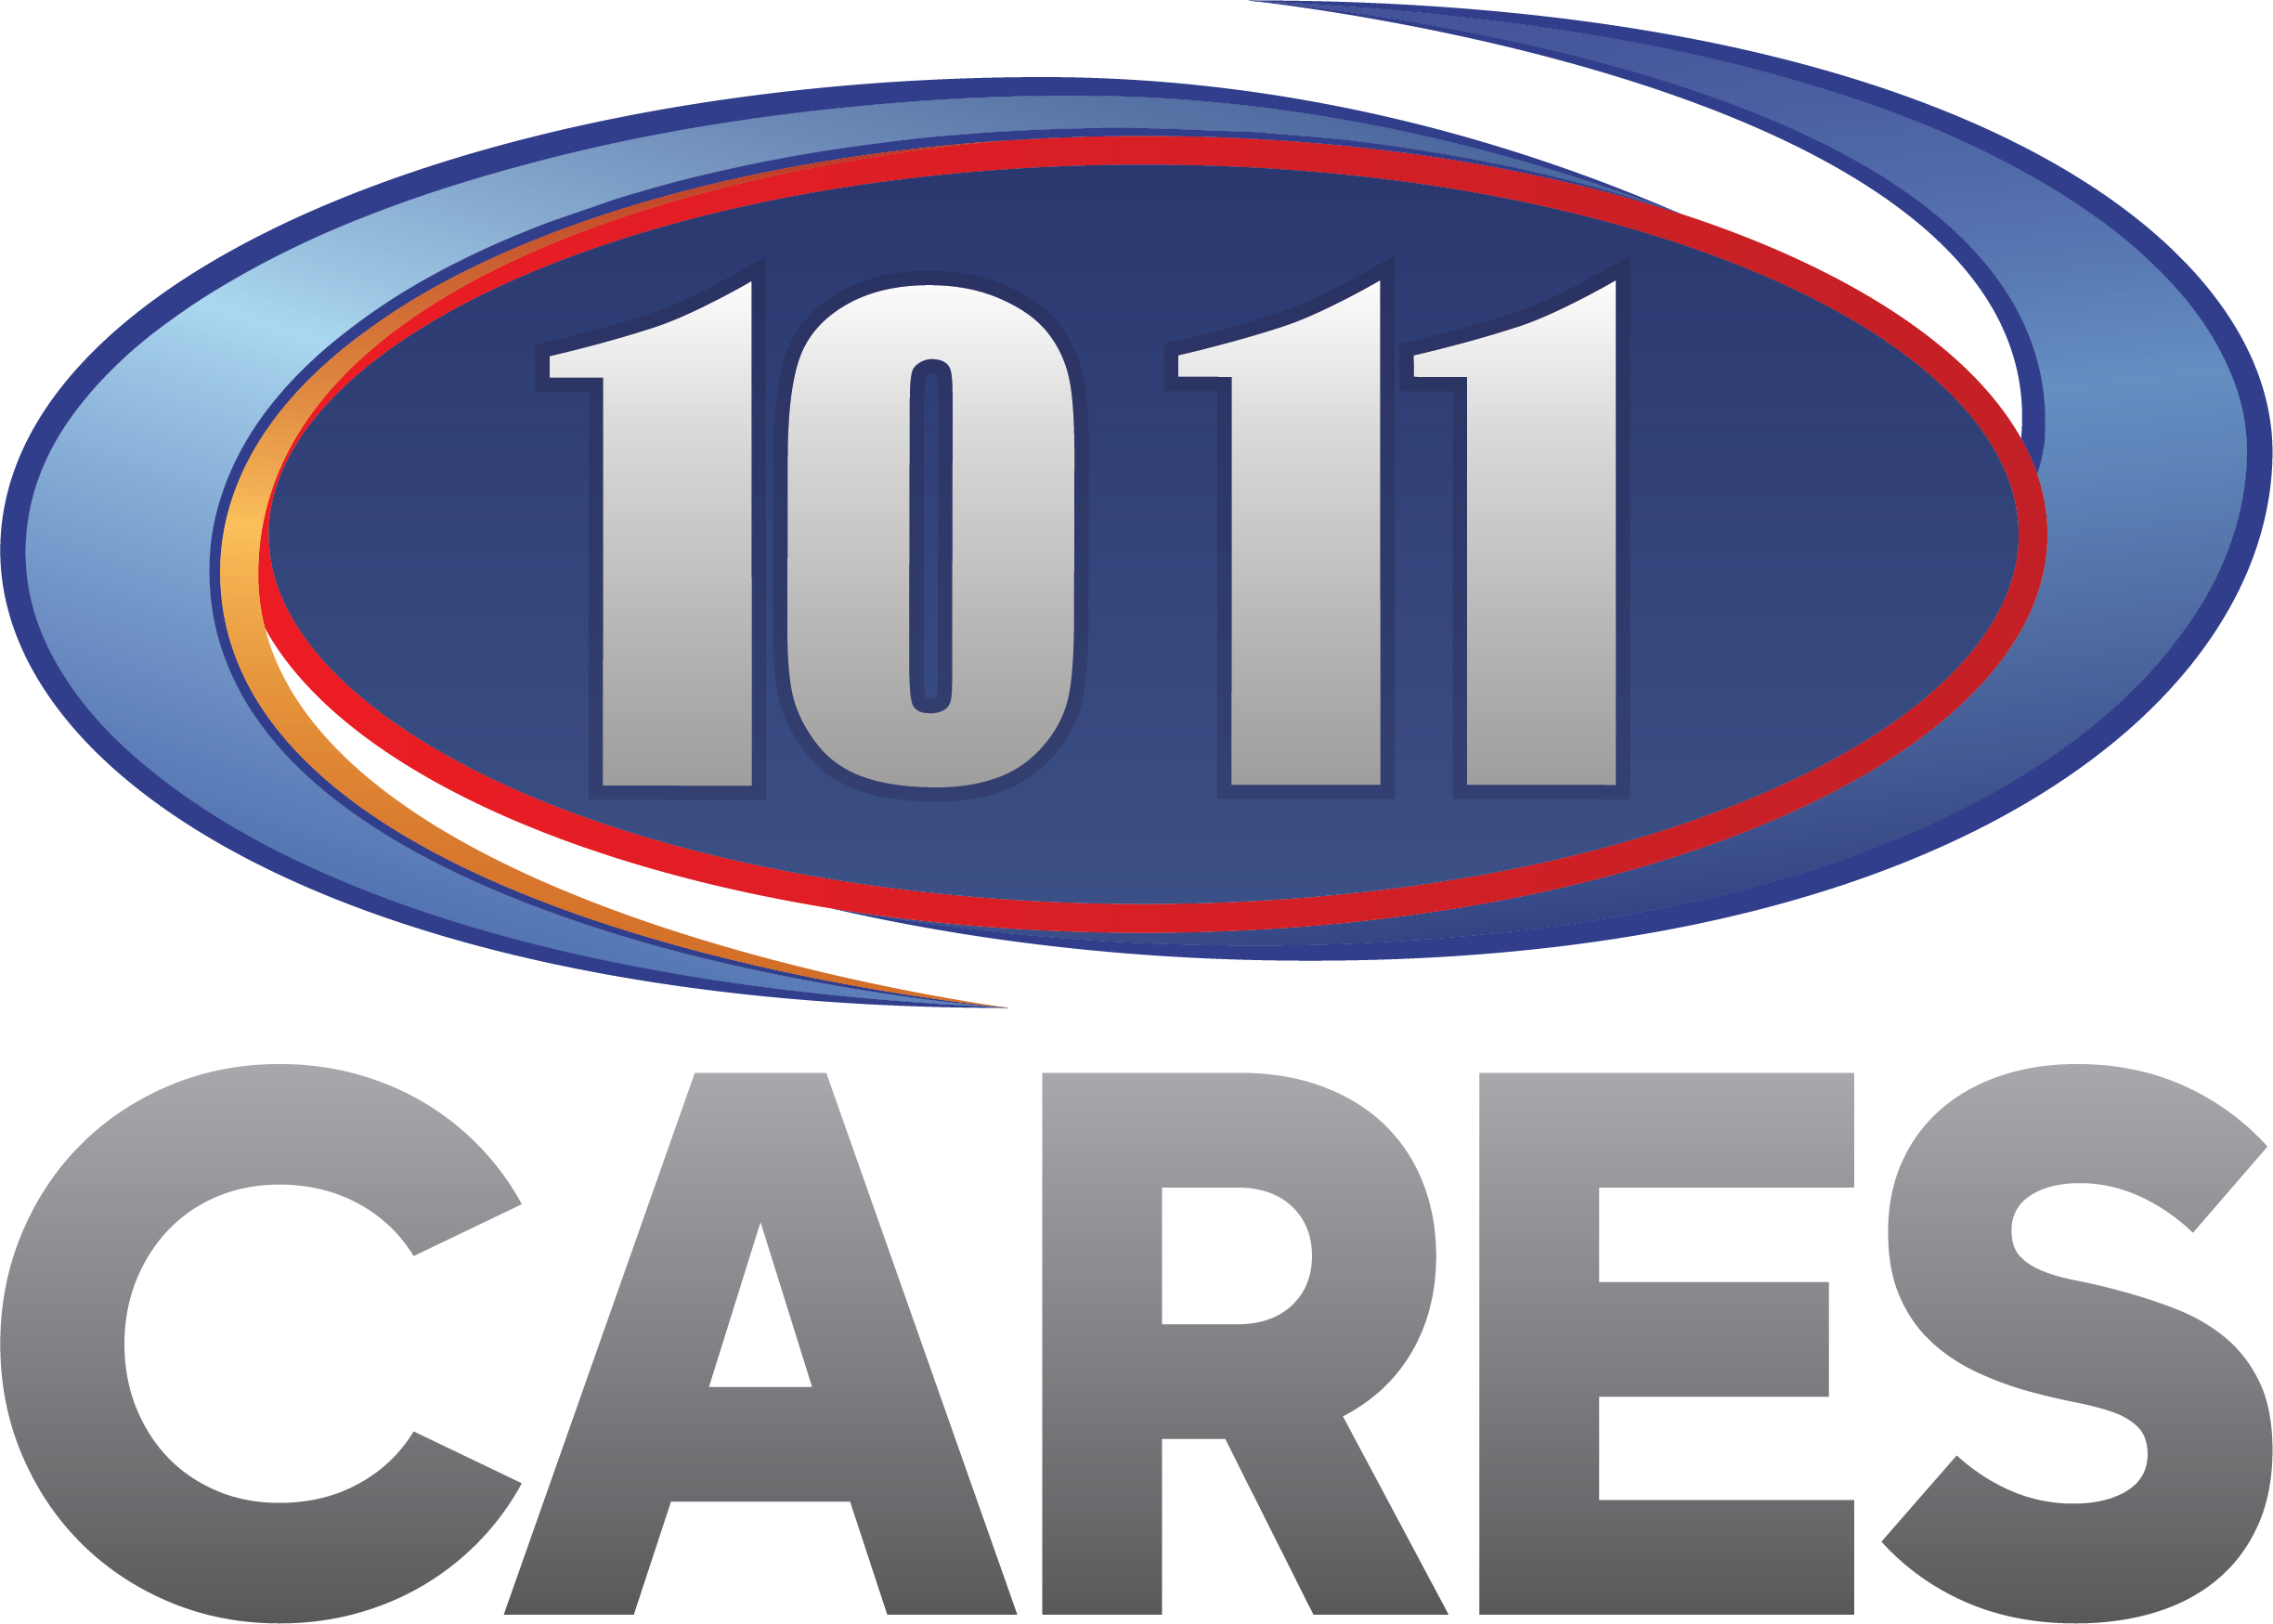 1011 Cares